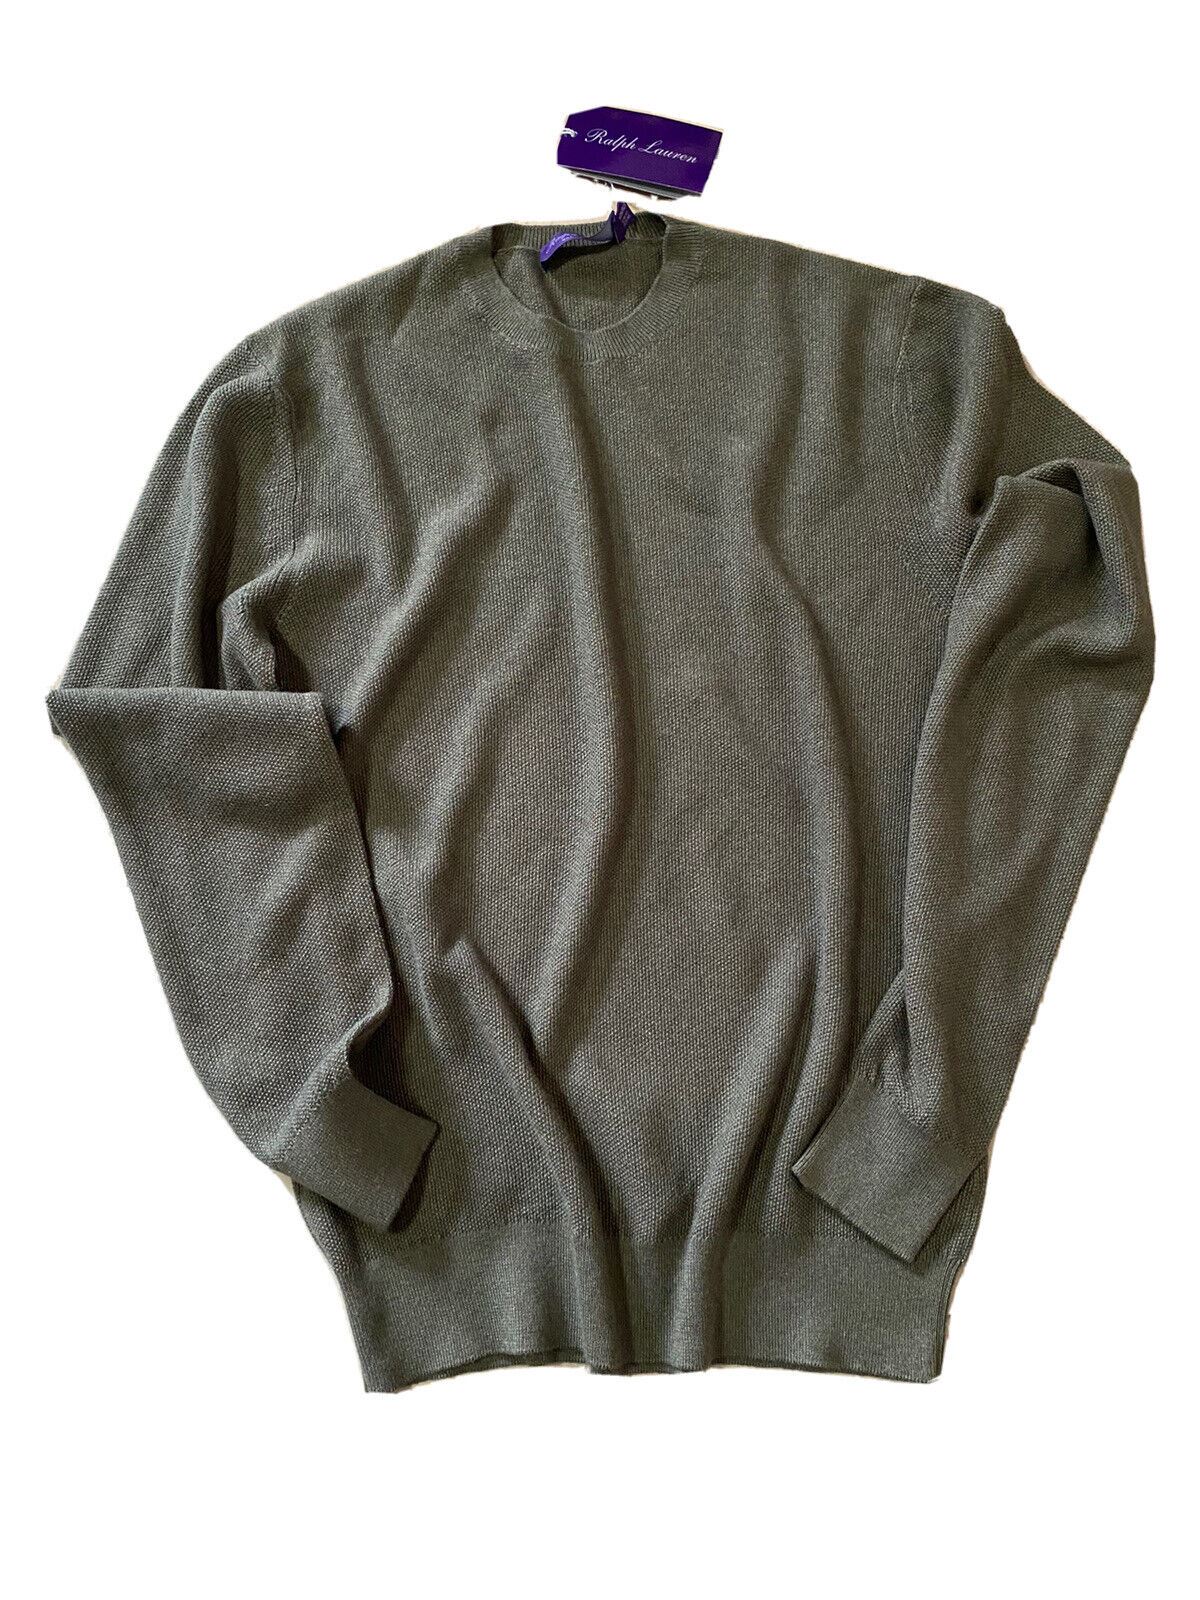 NWT $795 Ralph Lauren Purple Label Мужской шелковый/кашемировый свитер с круглым вырезом DK Sage M